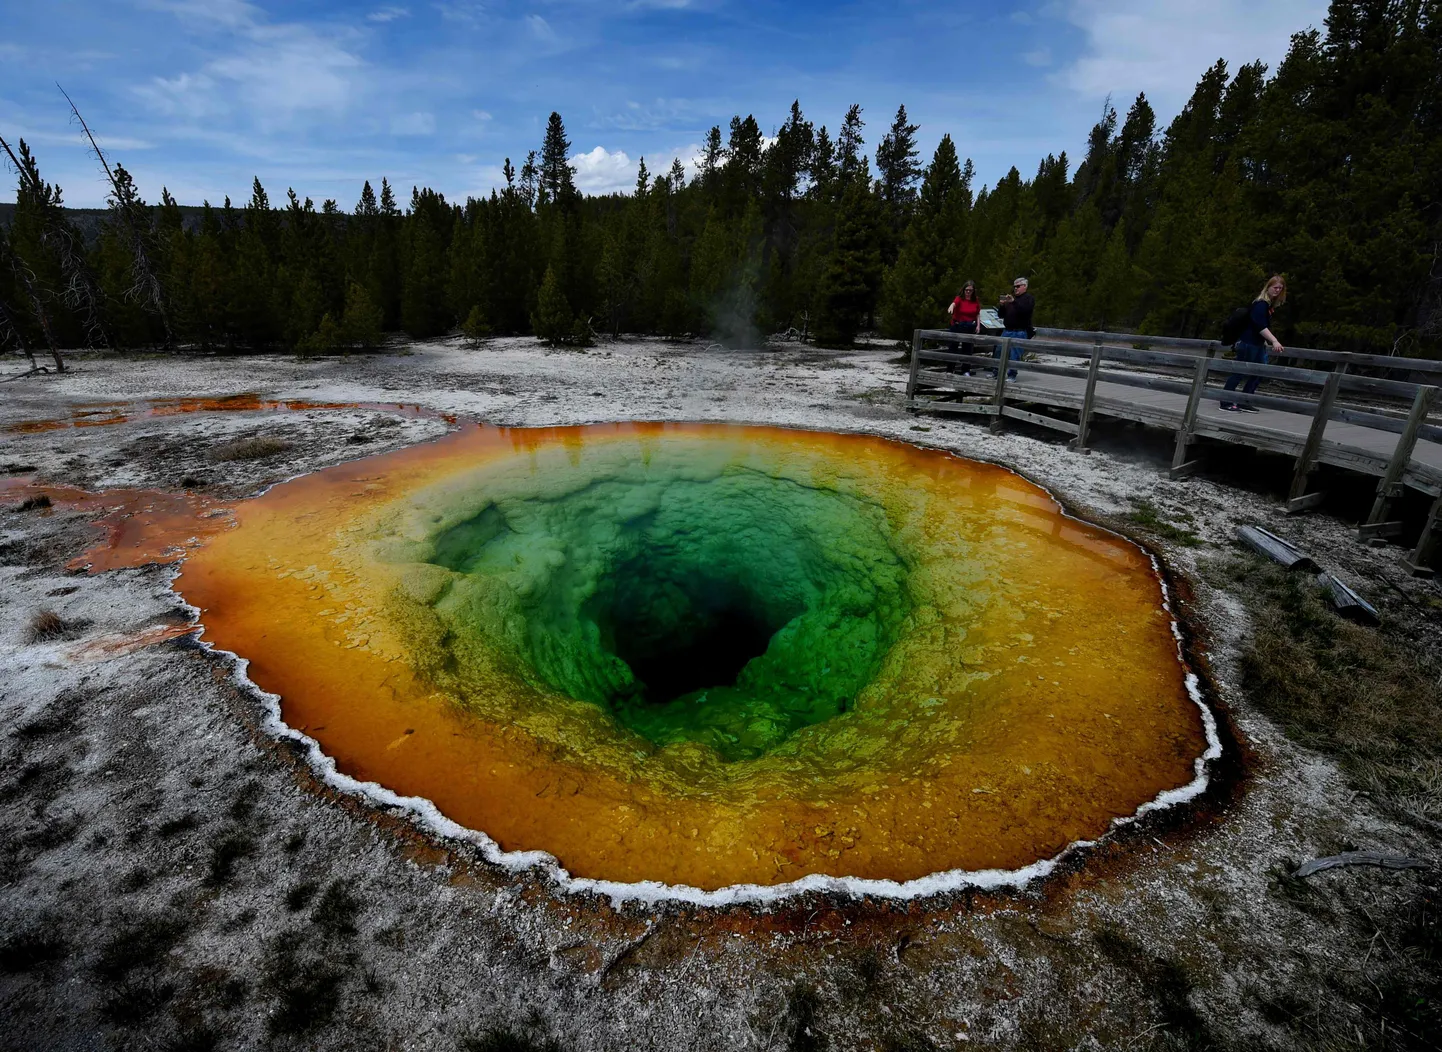 Yellowstone'i rahvuspargis on ligikaudu 300 geisrit ja 10 000 kuumaveeallikat.